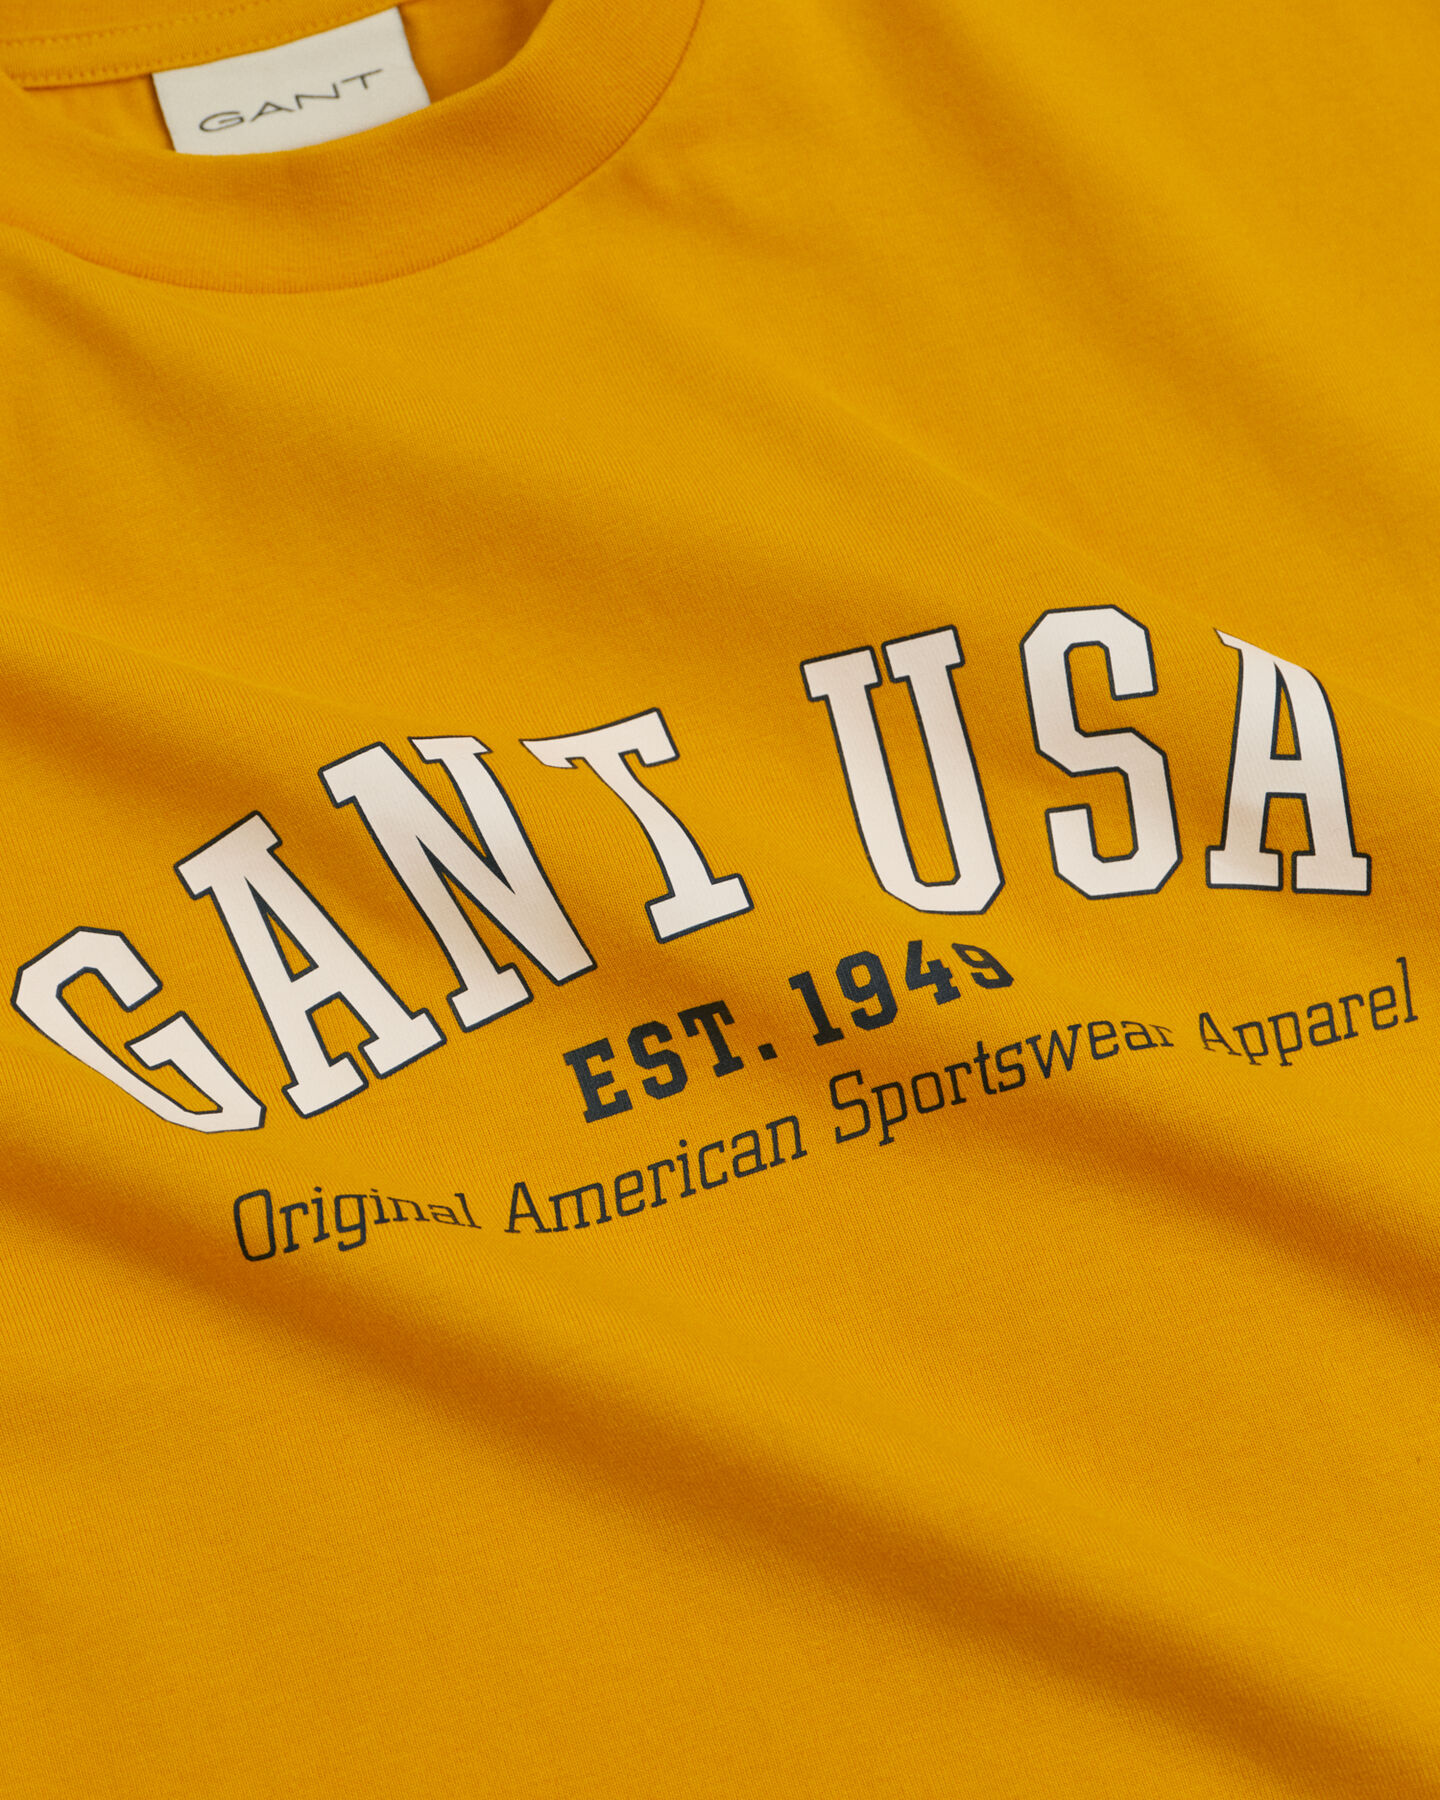 GANT USA T-Shirt - GANT